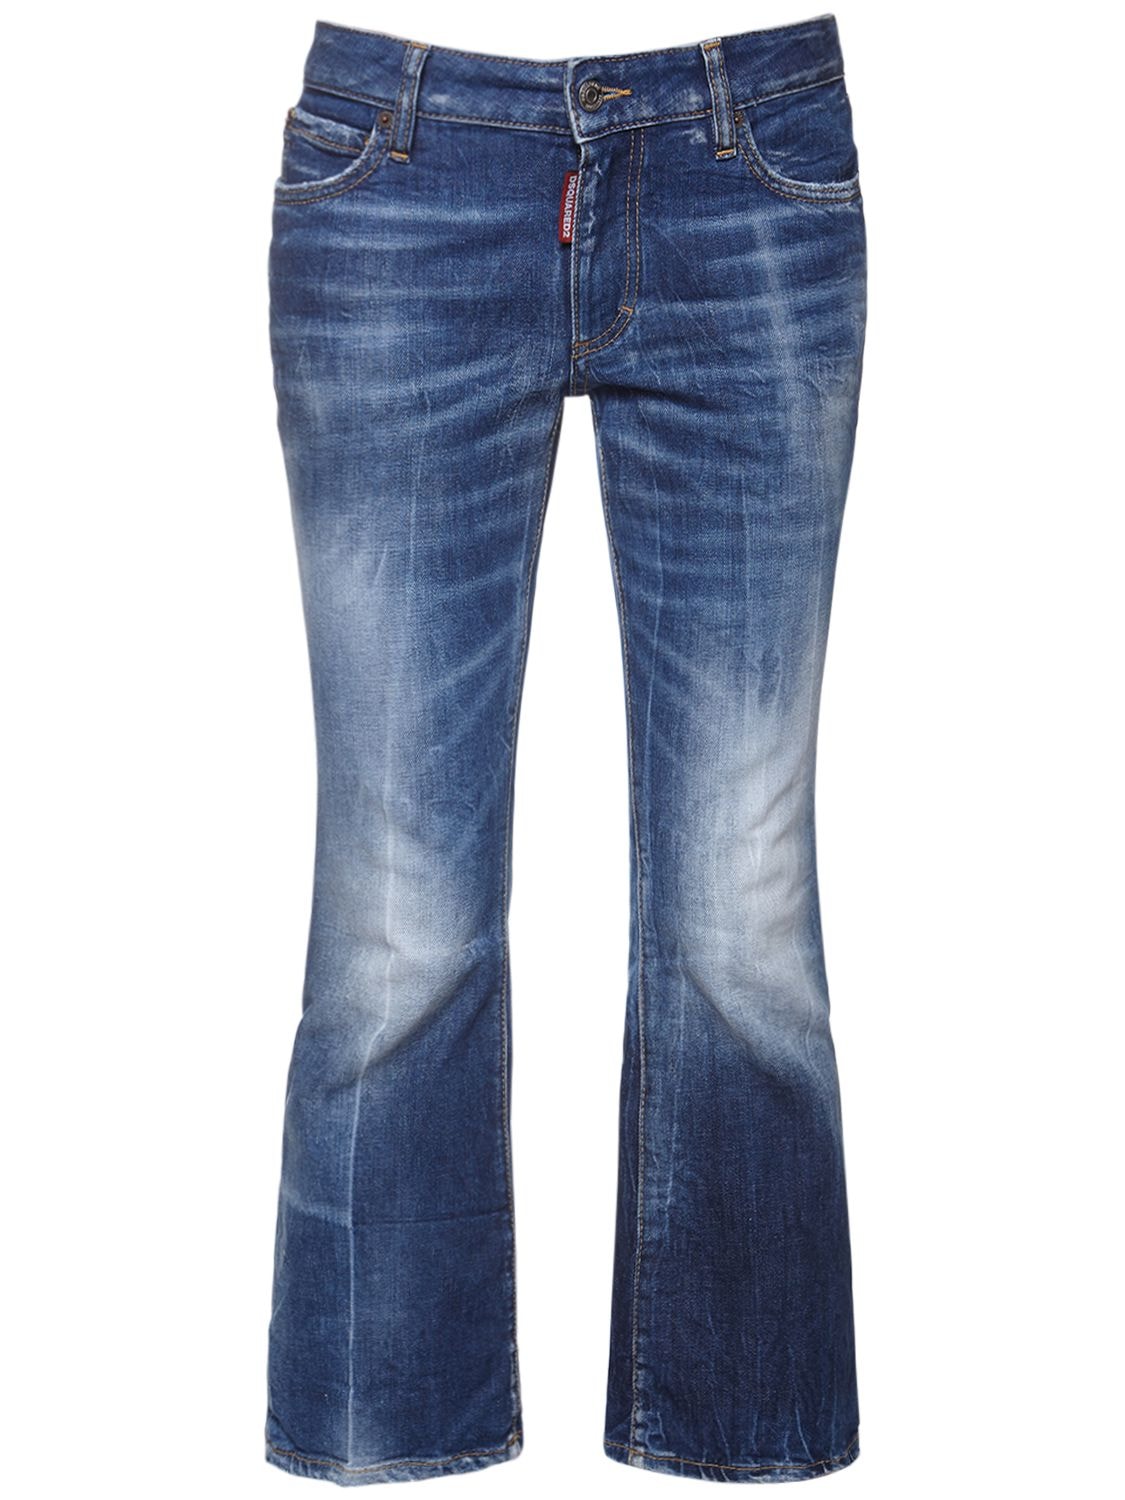 Jeans Cropped In Denim Di Cotone